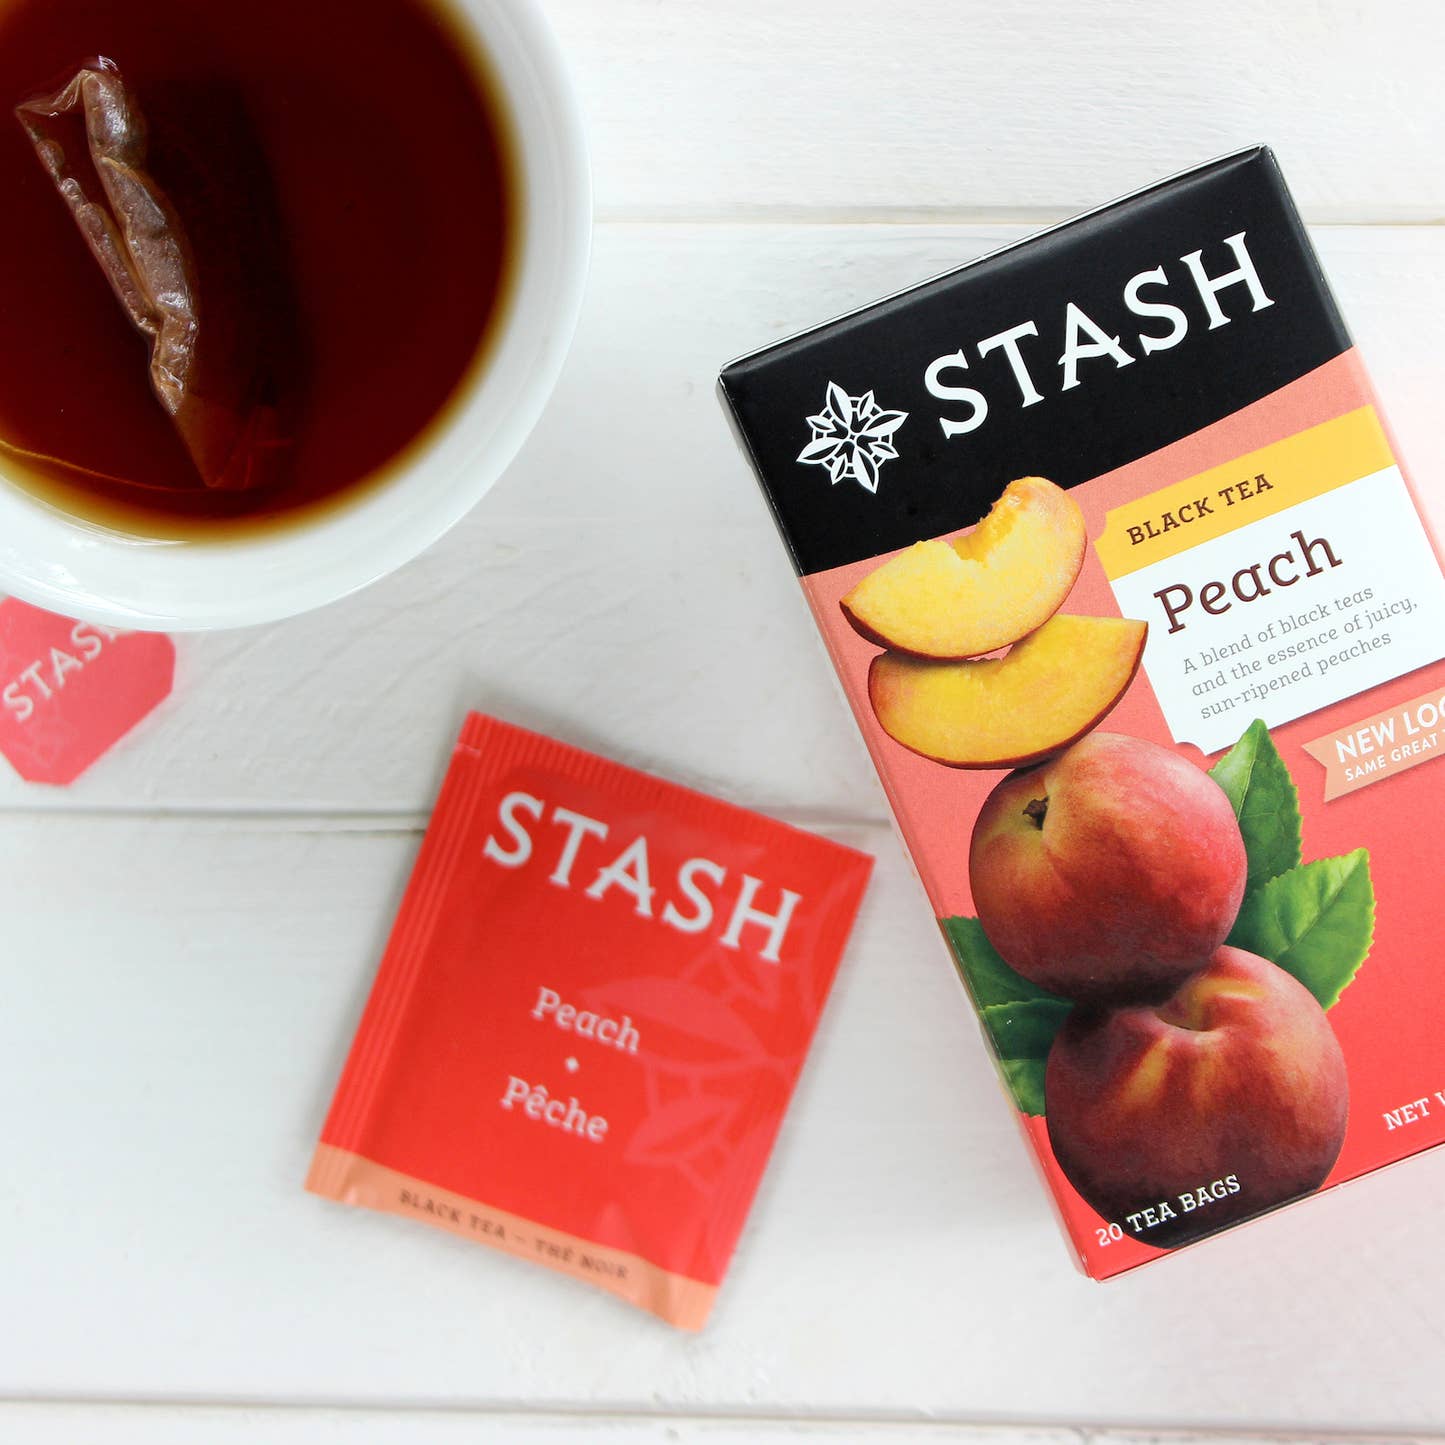 Peach Black Tea, Stash Peach Tea